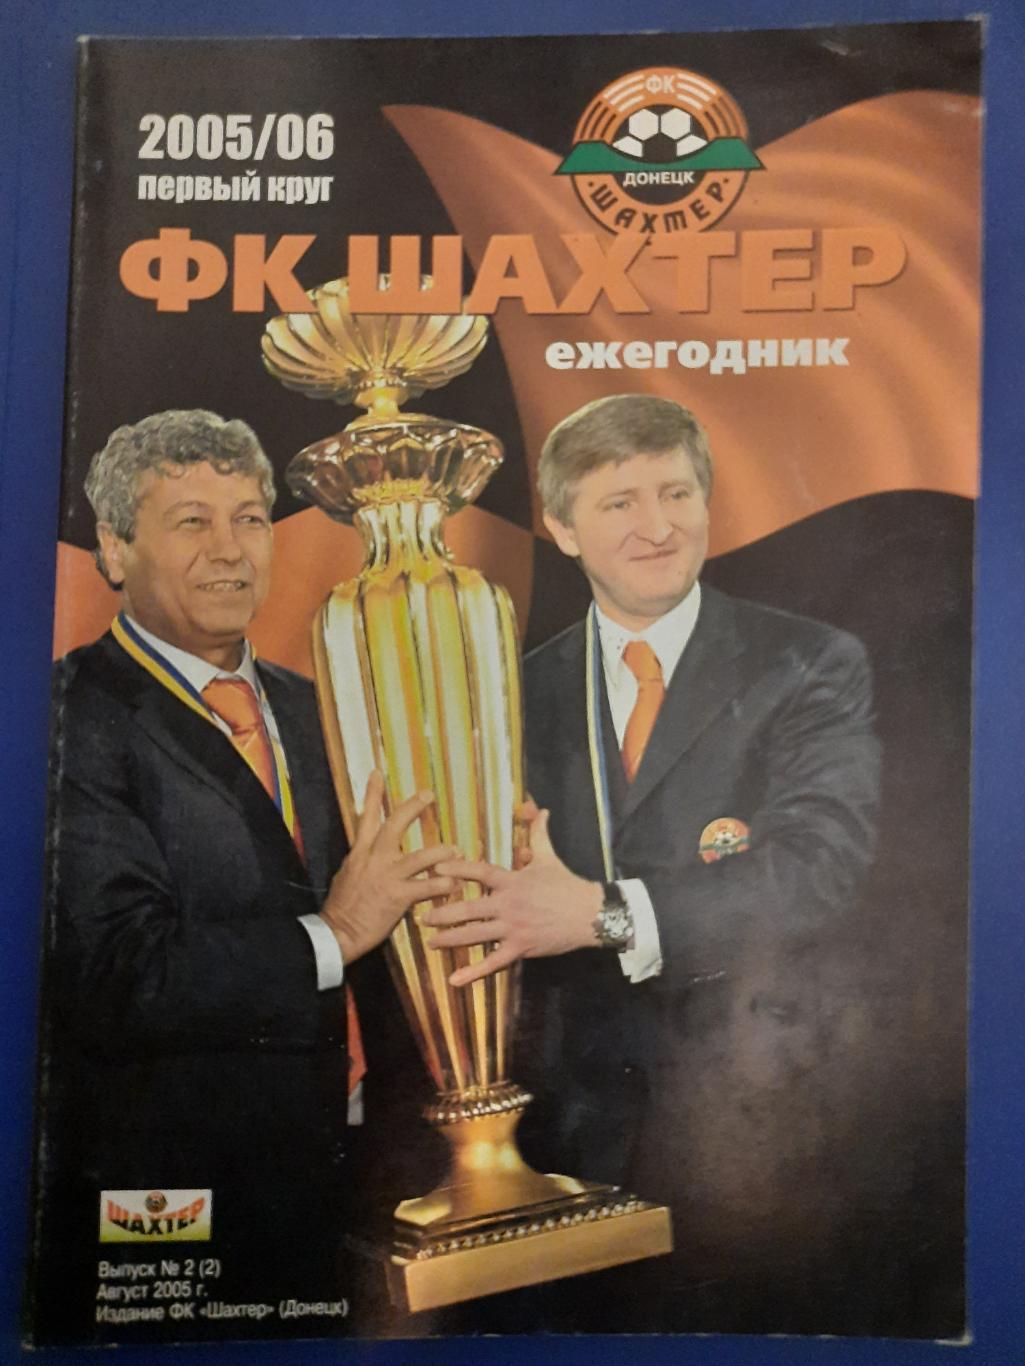 календарь-справочник,Шахтер Донецк 2005/06,первый круг.